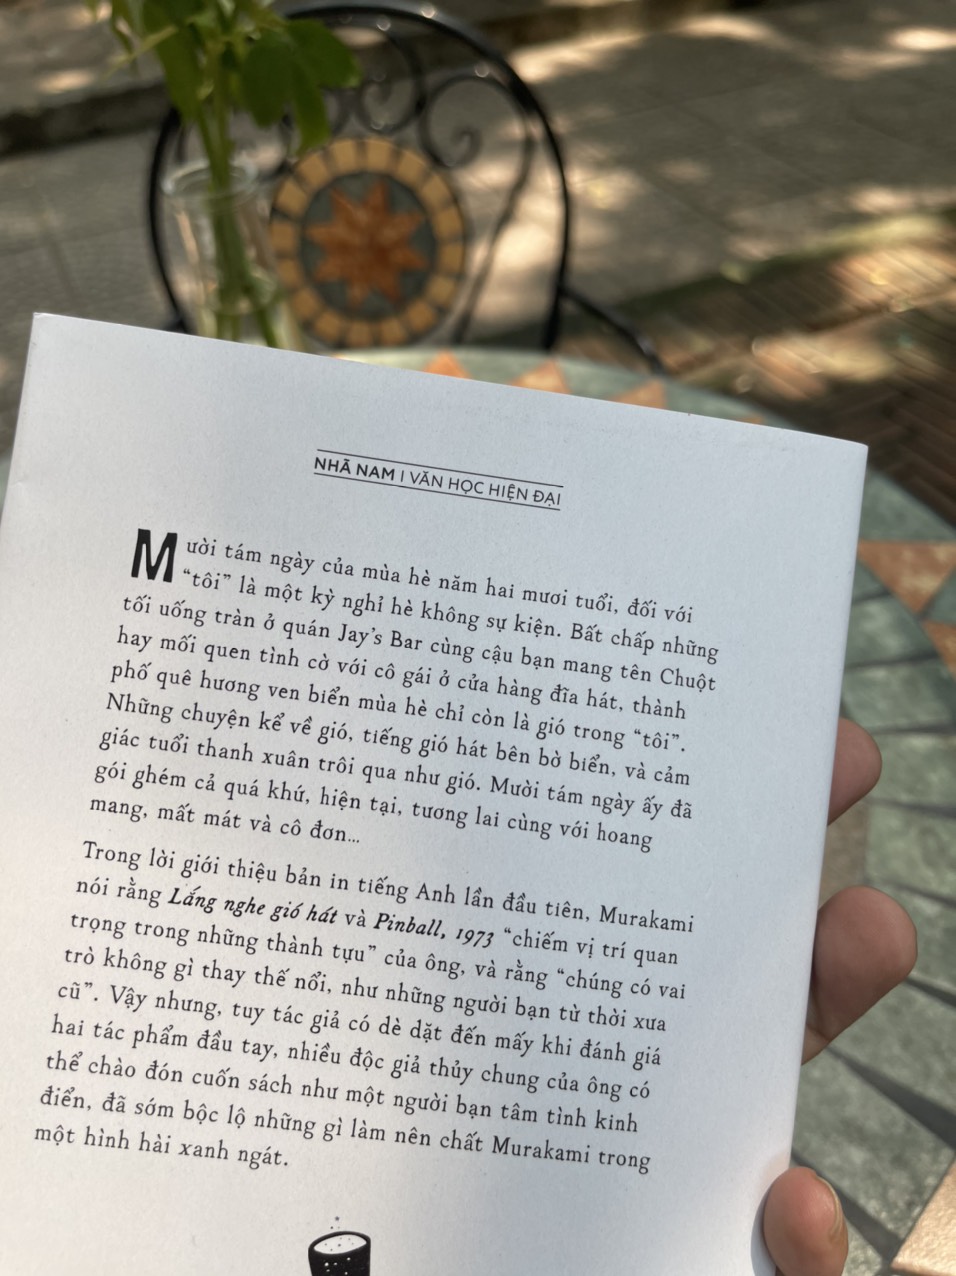 LẮNG NGHE GIÓ HÁT – Haruki Murakami – Nguyễn Hồng Anh dịch – Nhã Nam – NXB Hội nhà văn (Bìa mềm)